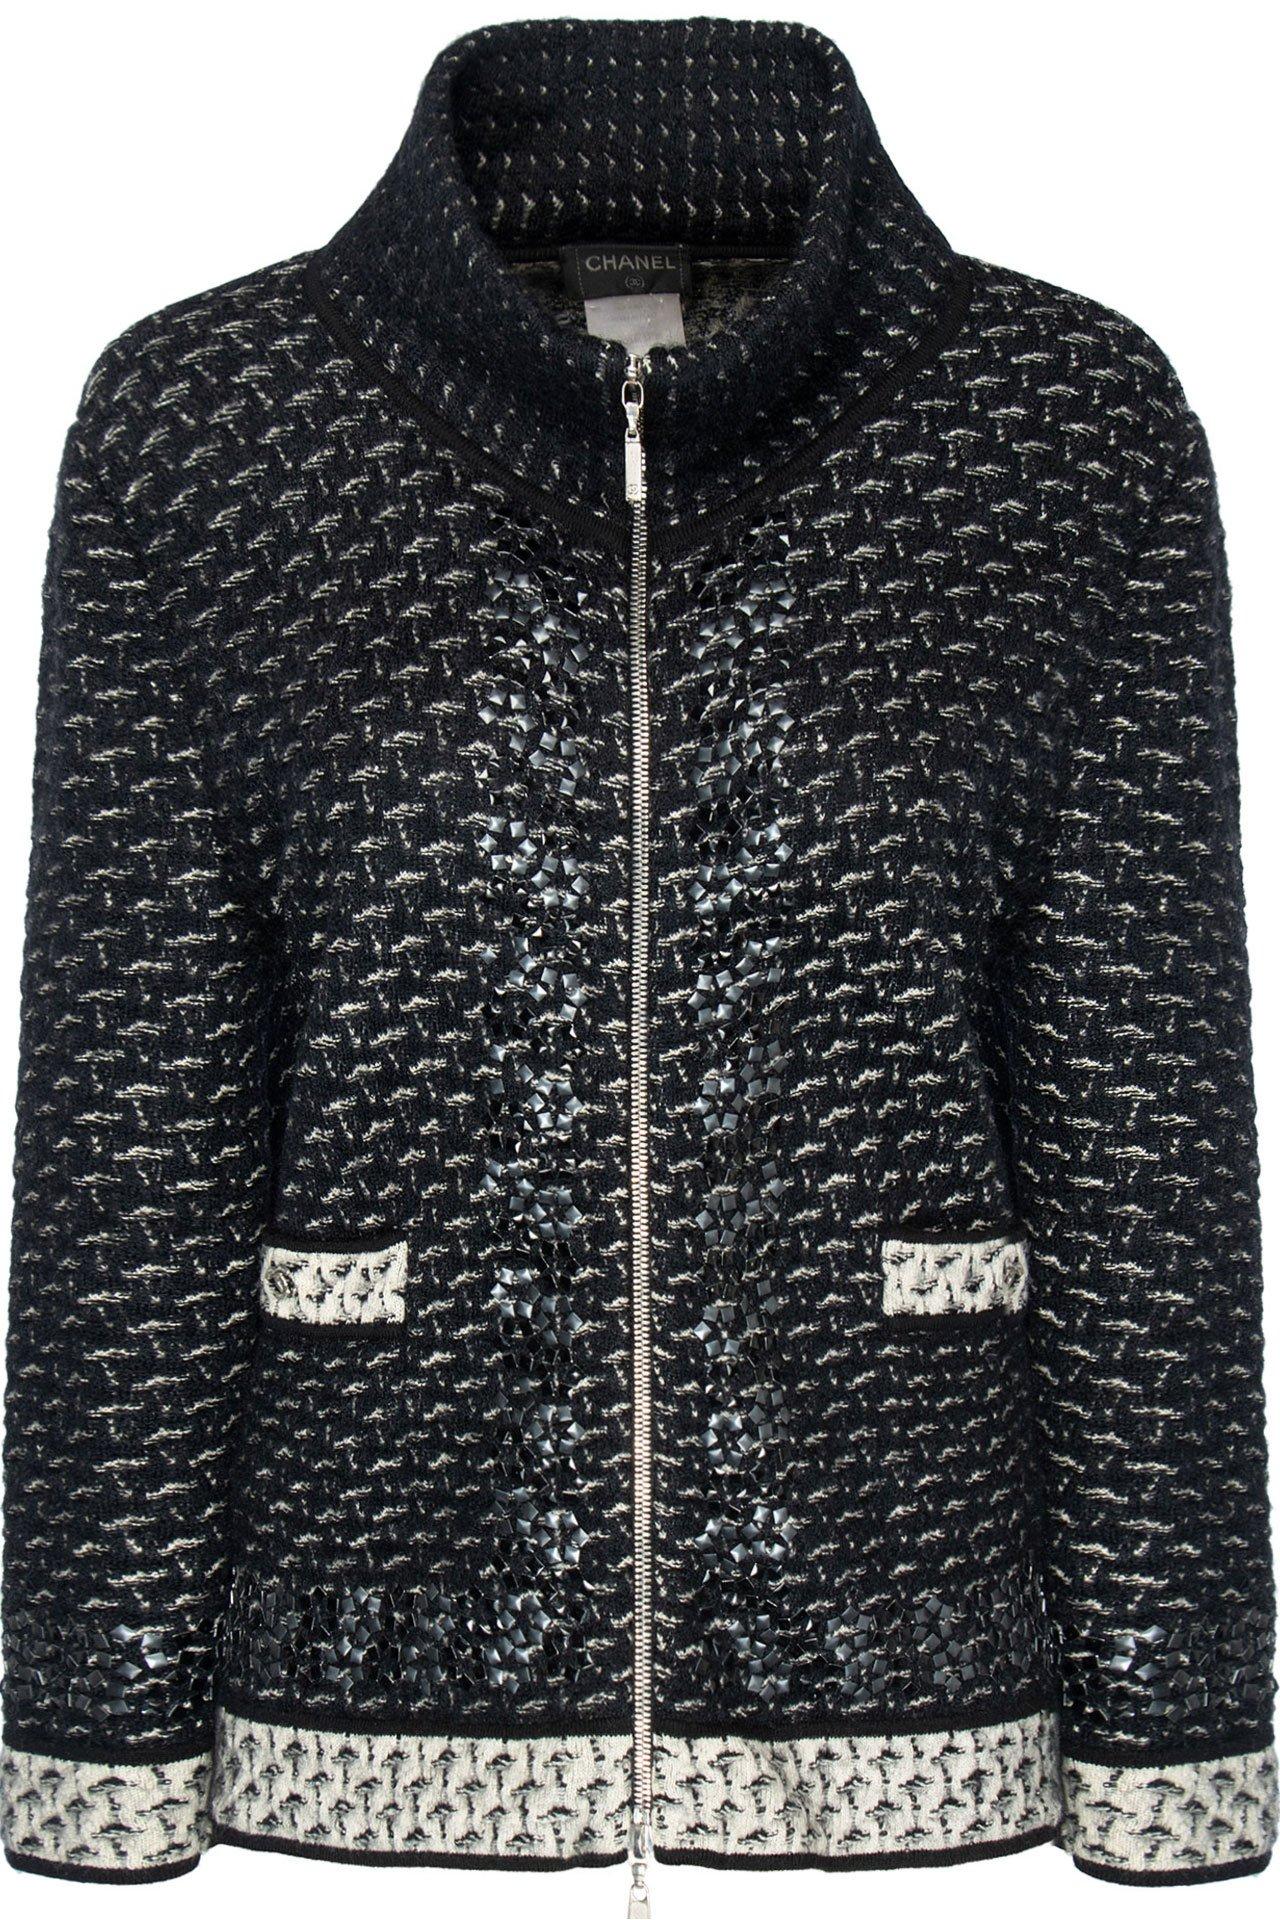 Chanel Black Cashmere Embellished Jacket For Sale 2